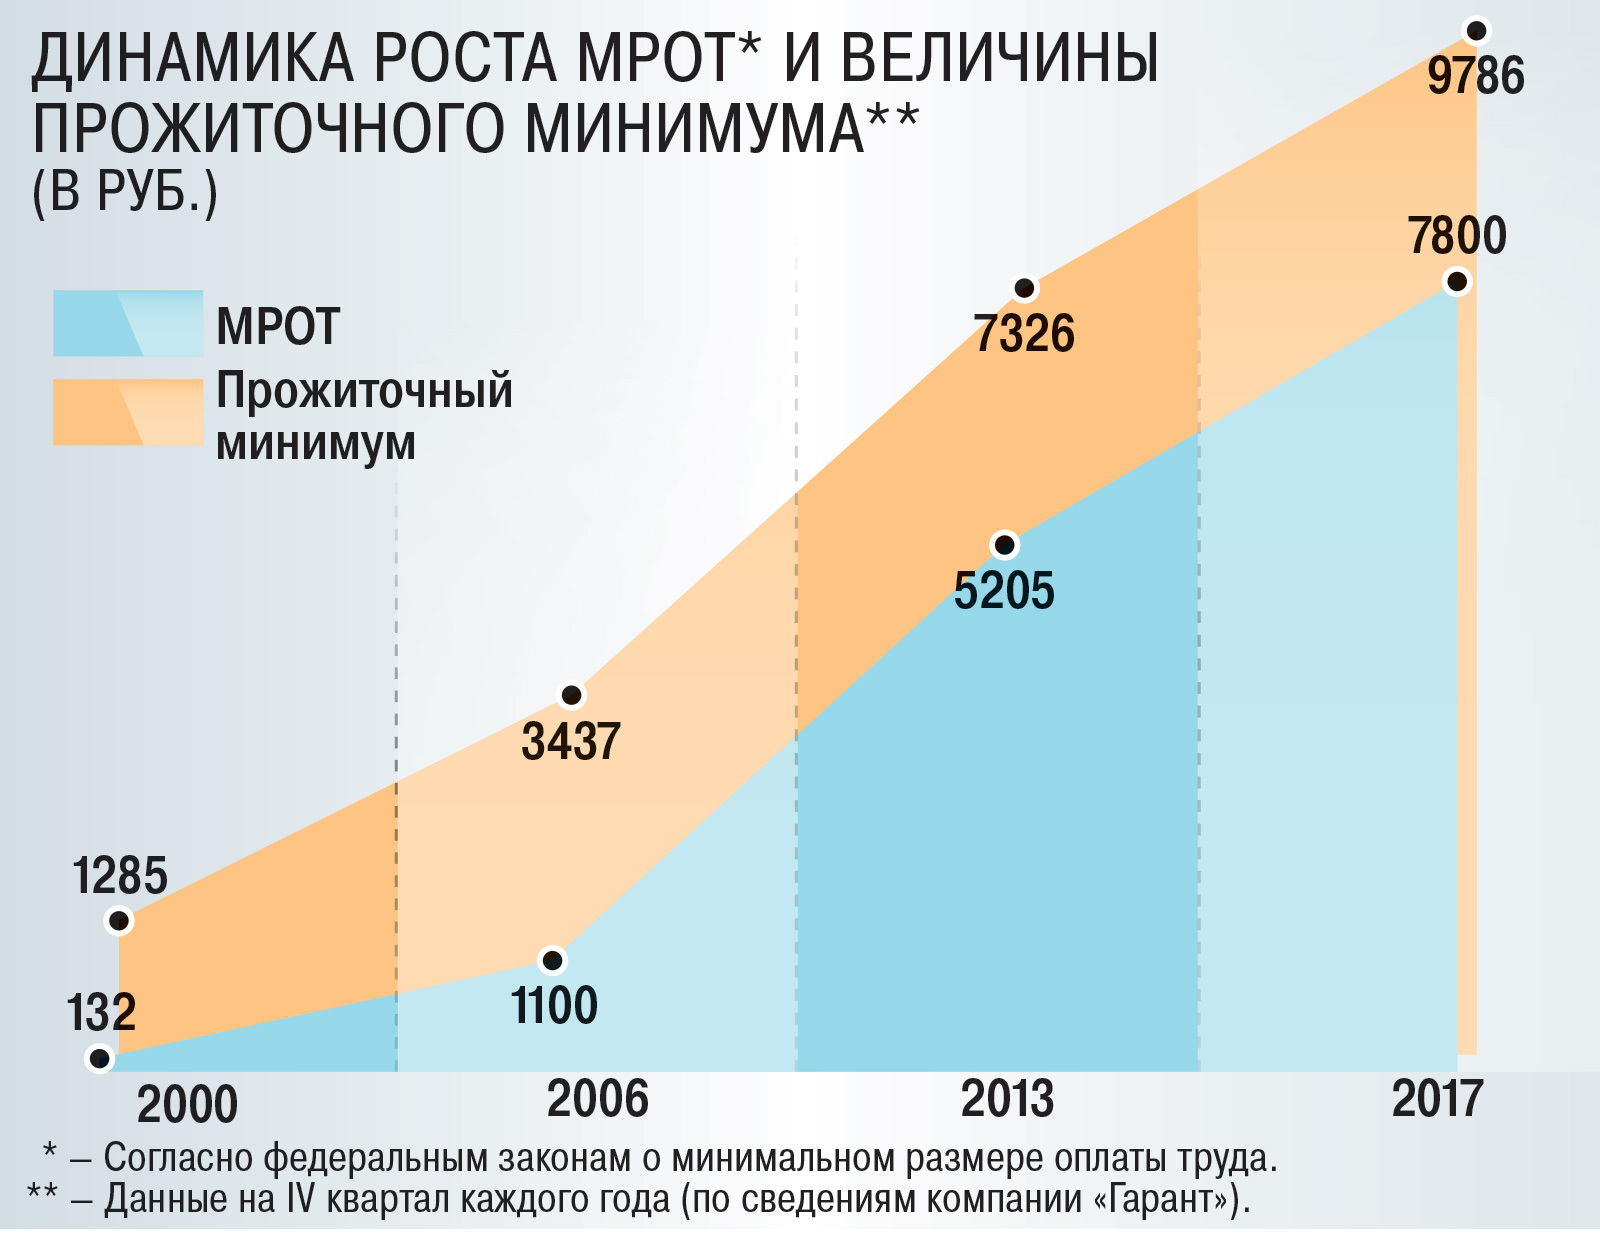 Прожиточный минимум минимальная заработная плата. Рост прожиточного минимума в России. Динамика роста прожиточного минимума. МРОТ. МРОТ динамика по годам.